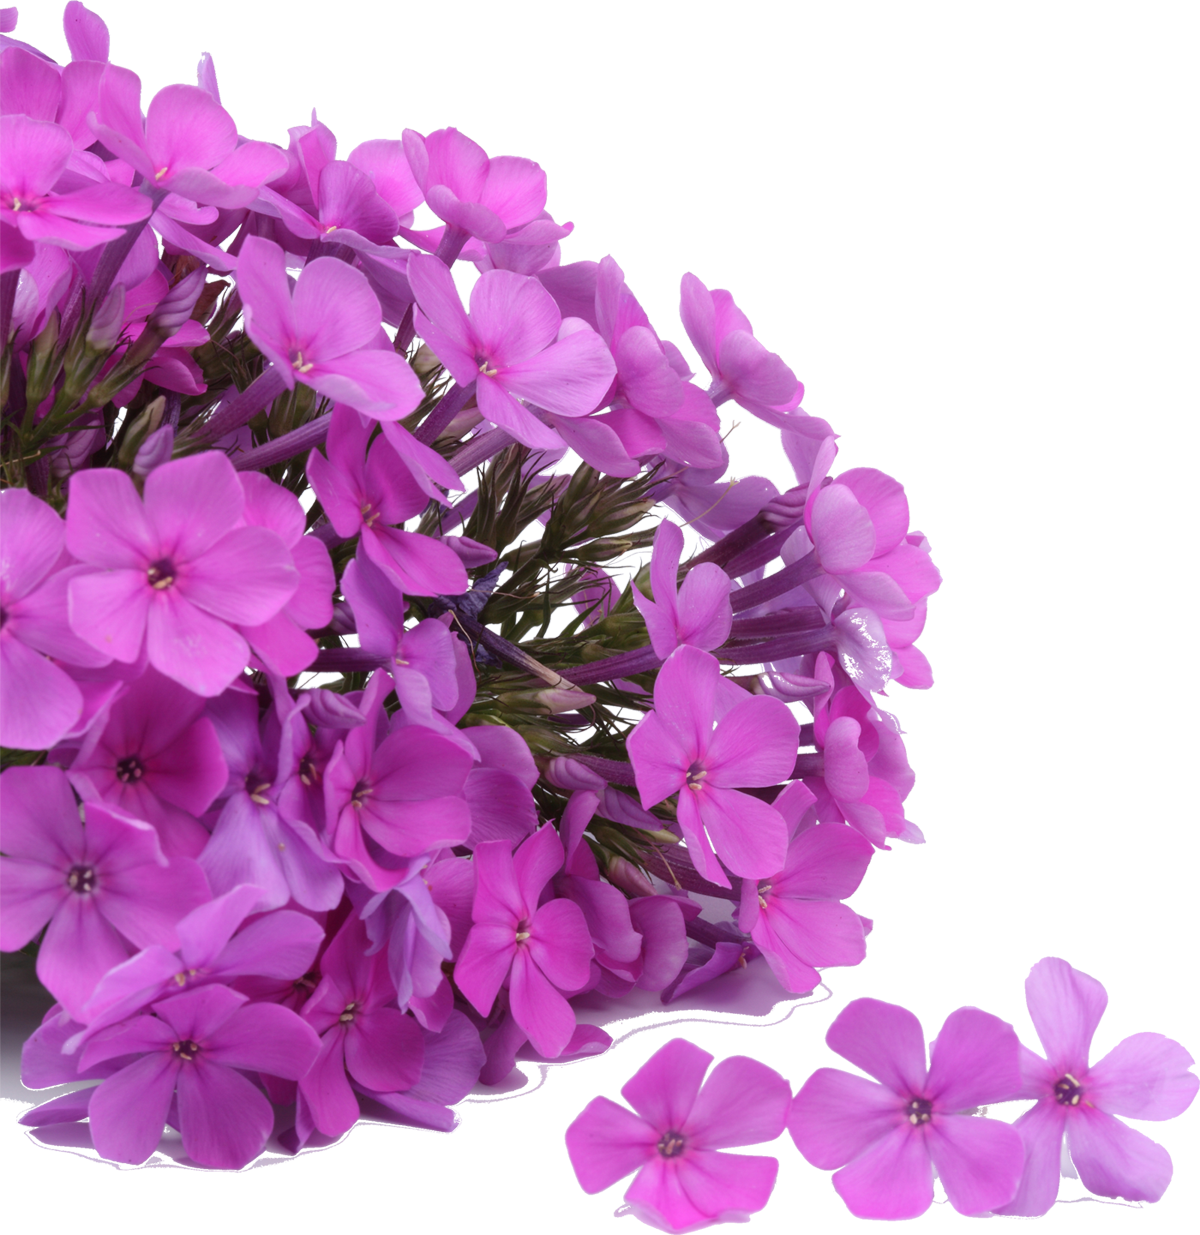 紫色の花の写真 フリー素材 No 635 紫 塊